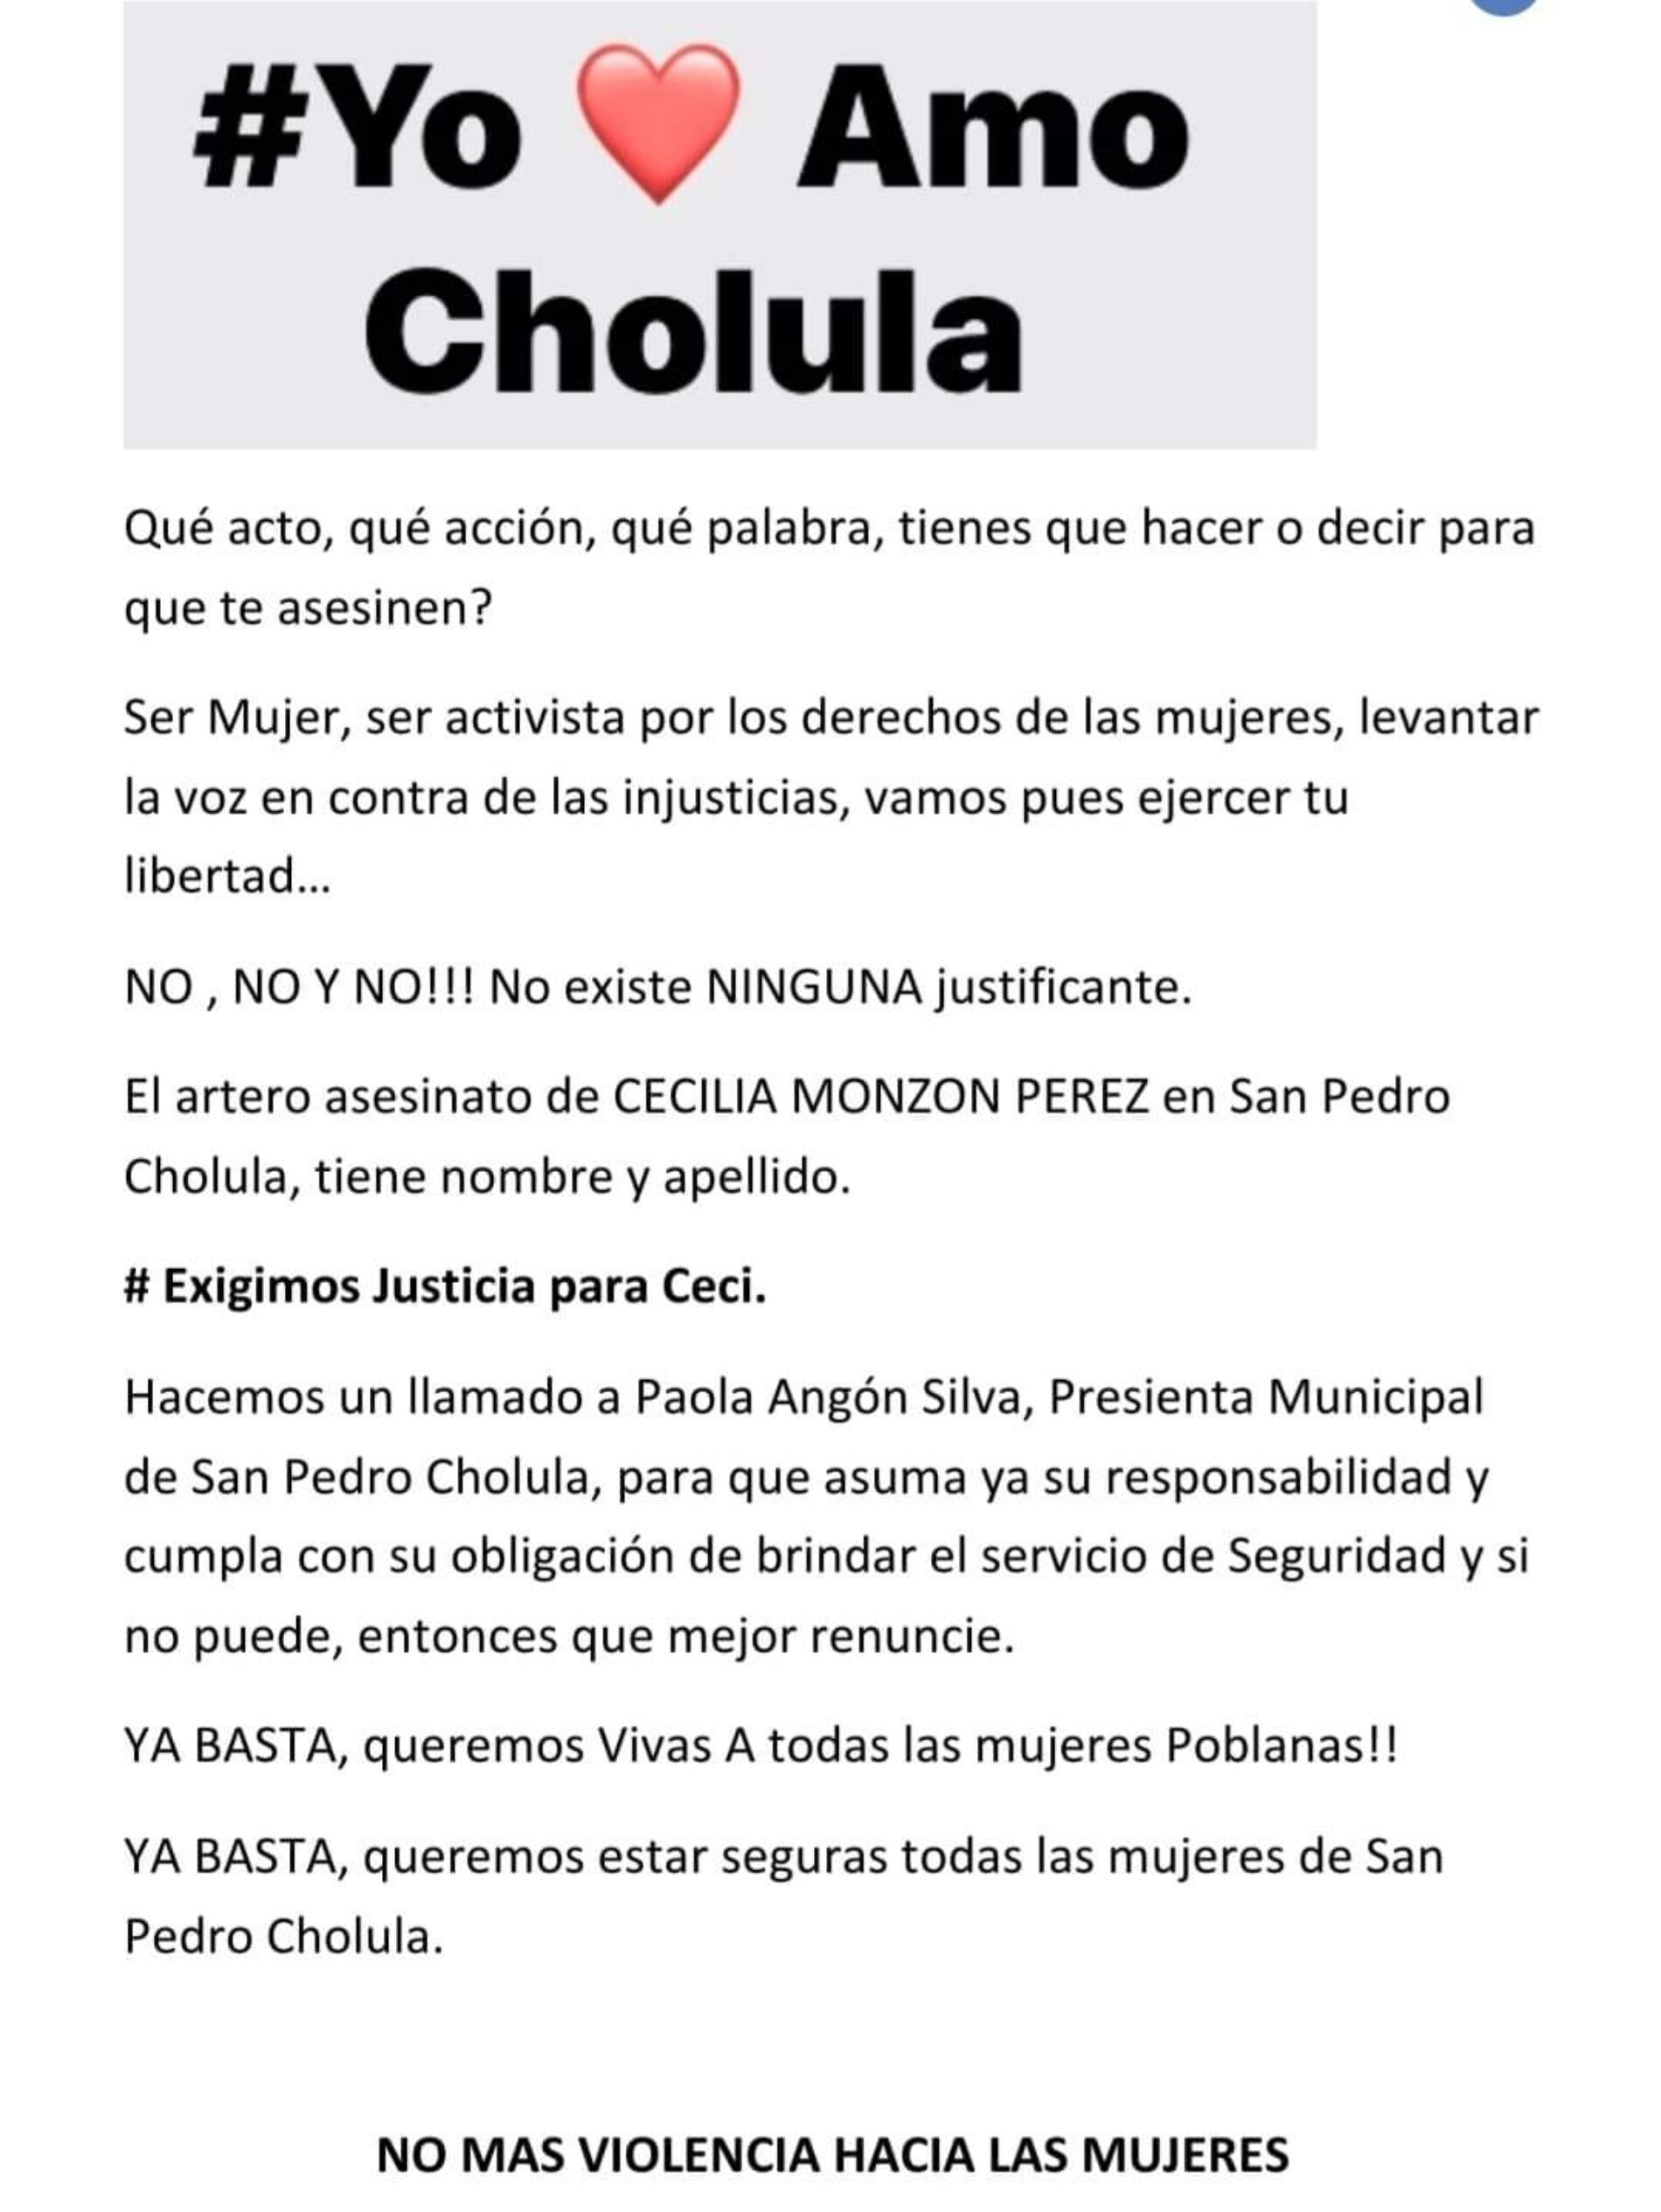 COLECTIVO YO ❤️ AMO CHOLULA EXIGE RENUNCIA DE LA PRESIDENTA DE CHOLULA POR AUMENTO DE INSEGURIDAD